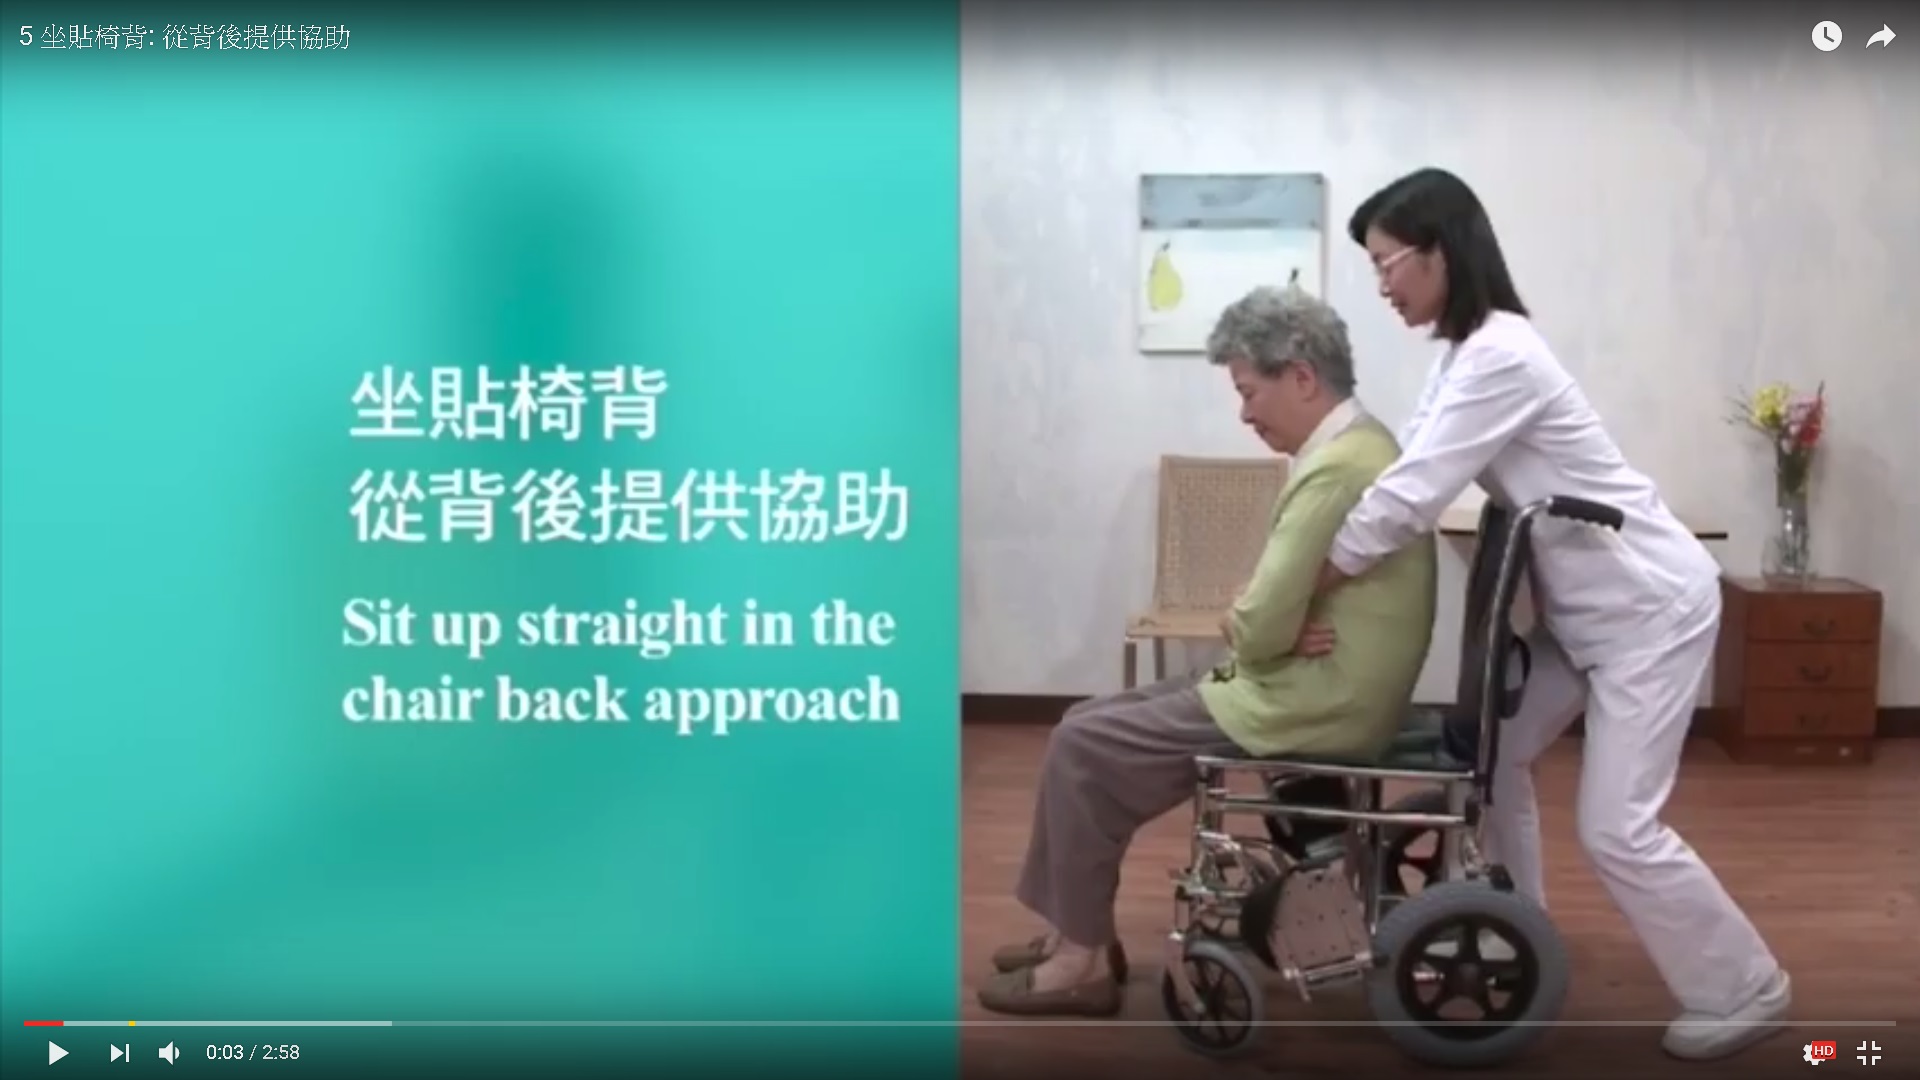 扶抱技巧 — 坐貼椅背: 從背後提供協助